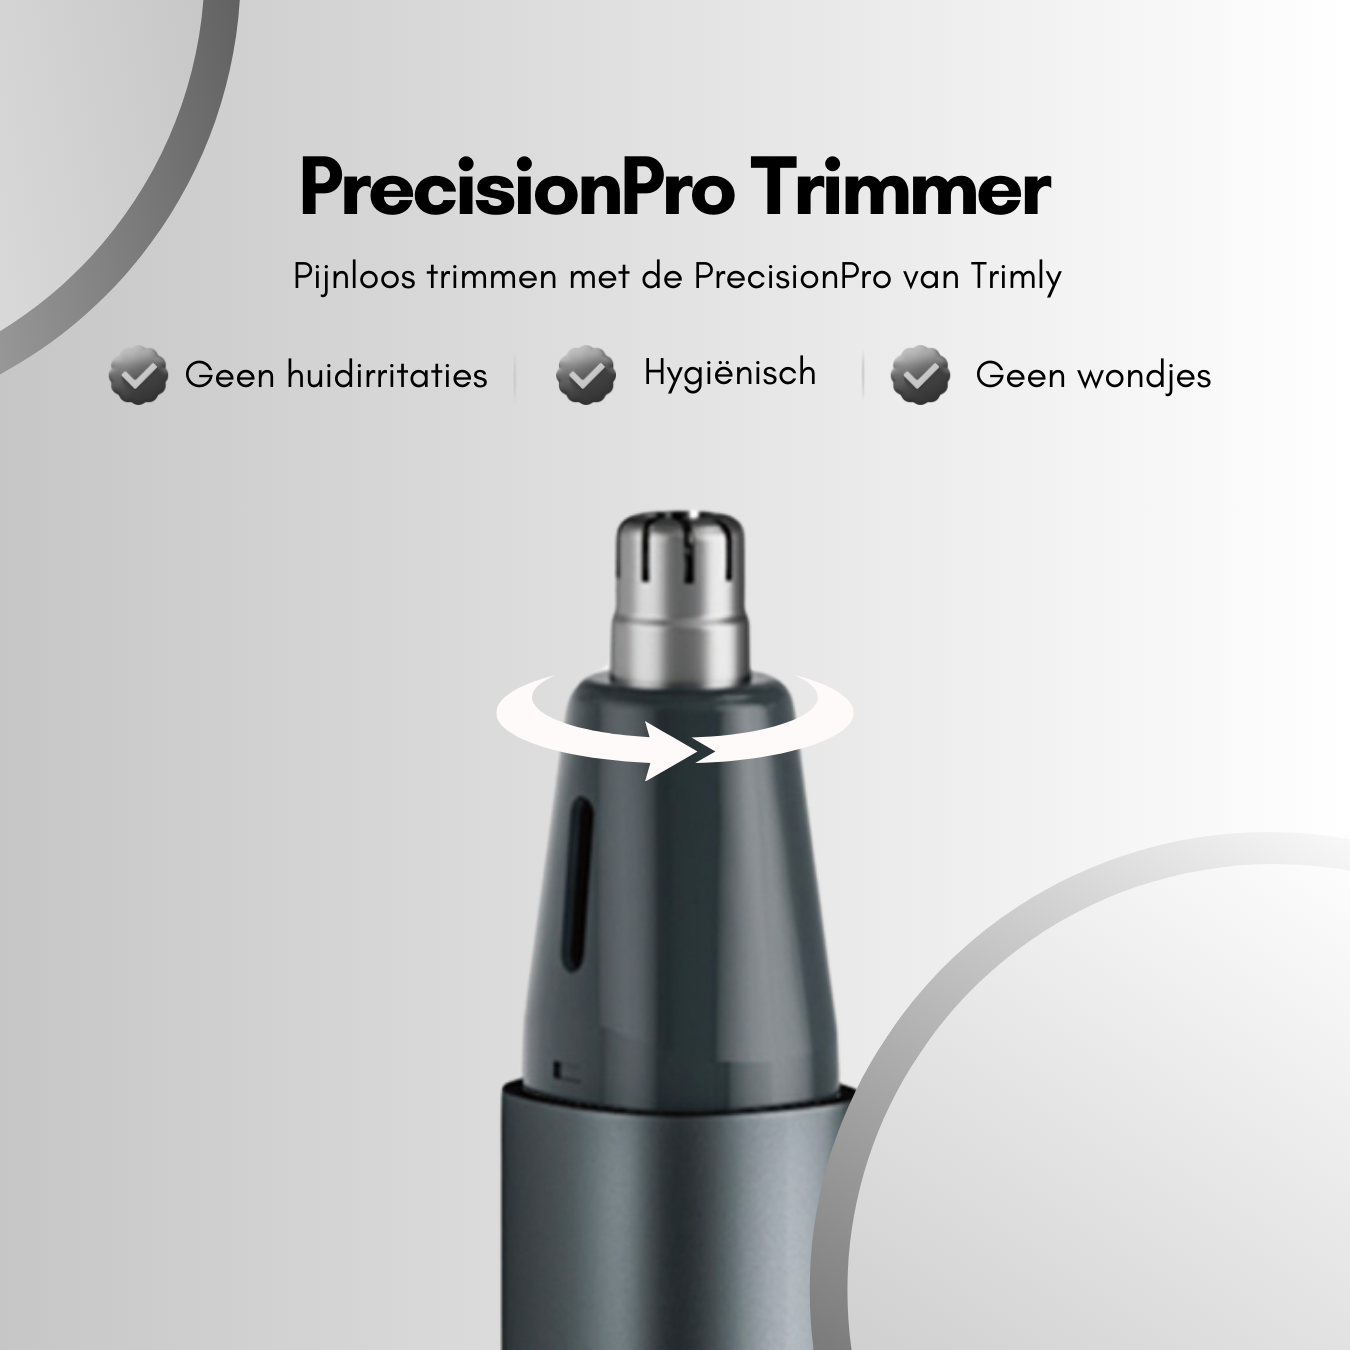 PrecisionPro neus en oorhaar wenkbrauw trimmer van Trimly pijnloos neustrimmen